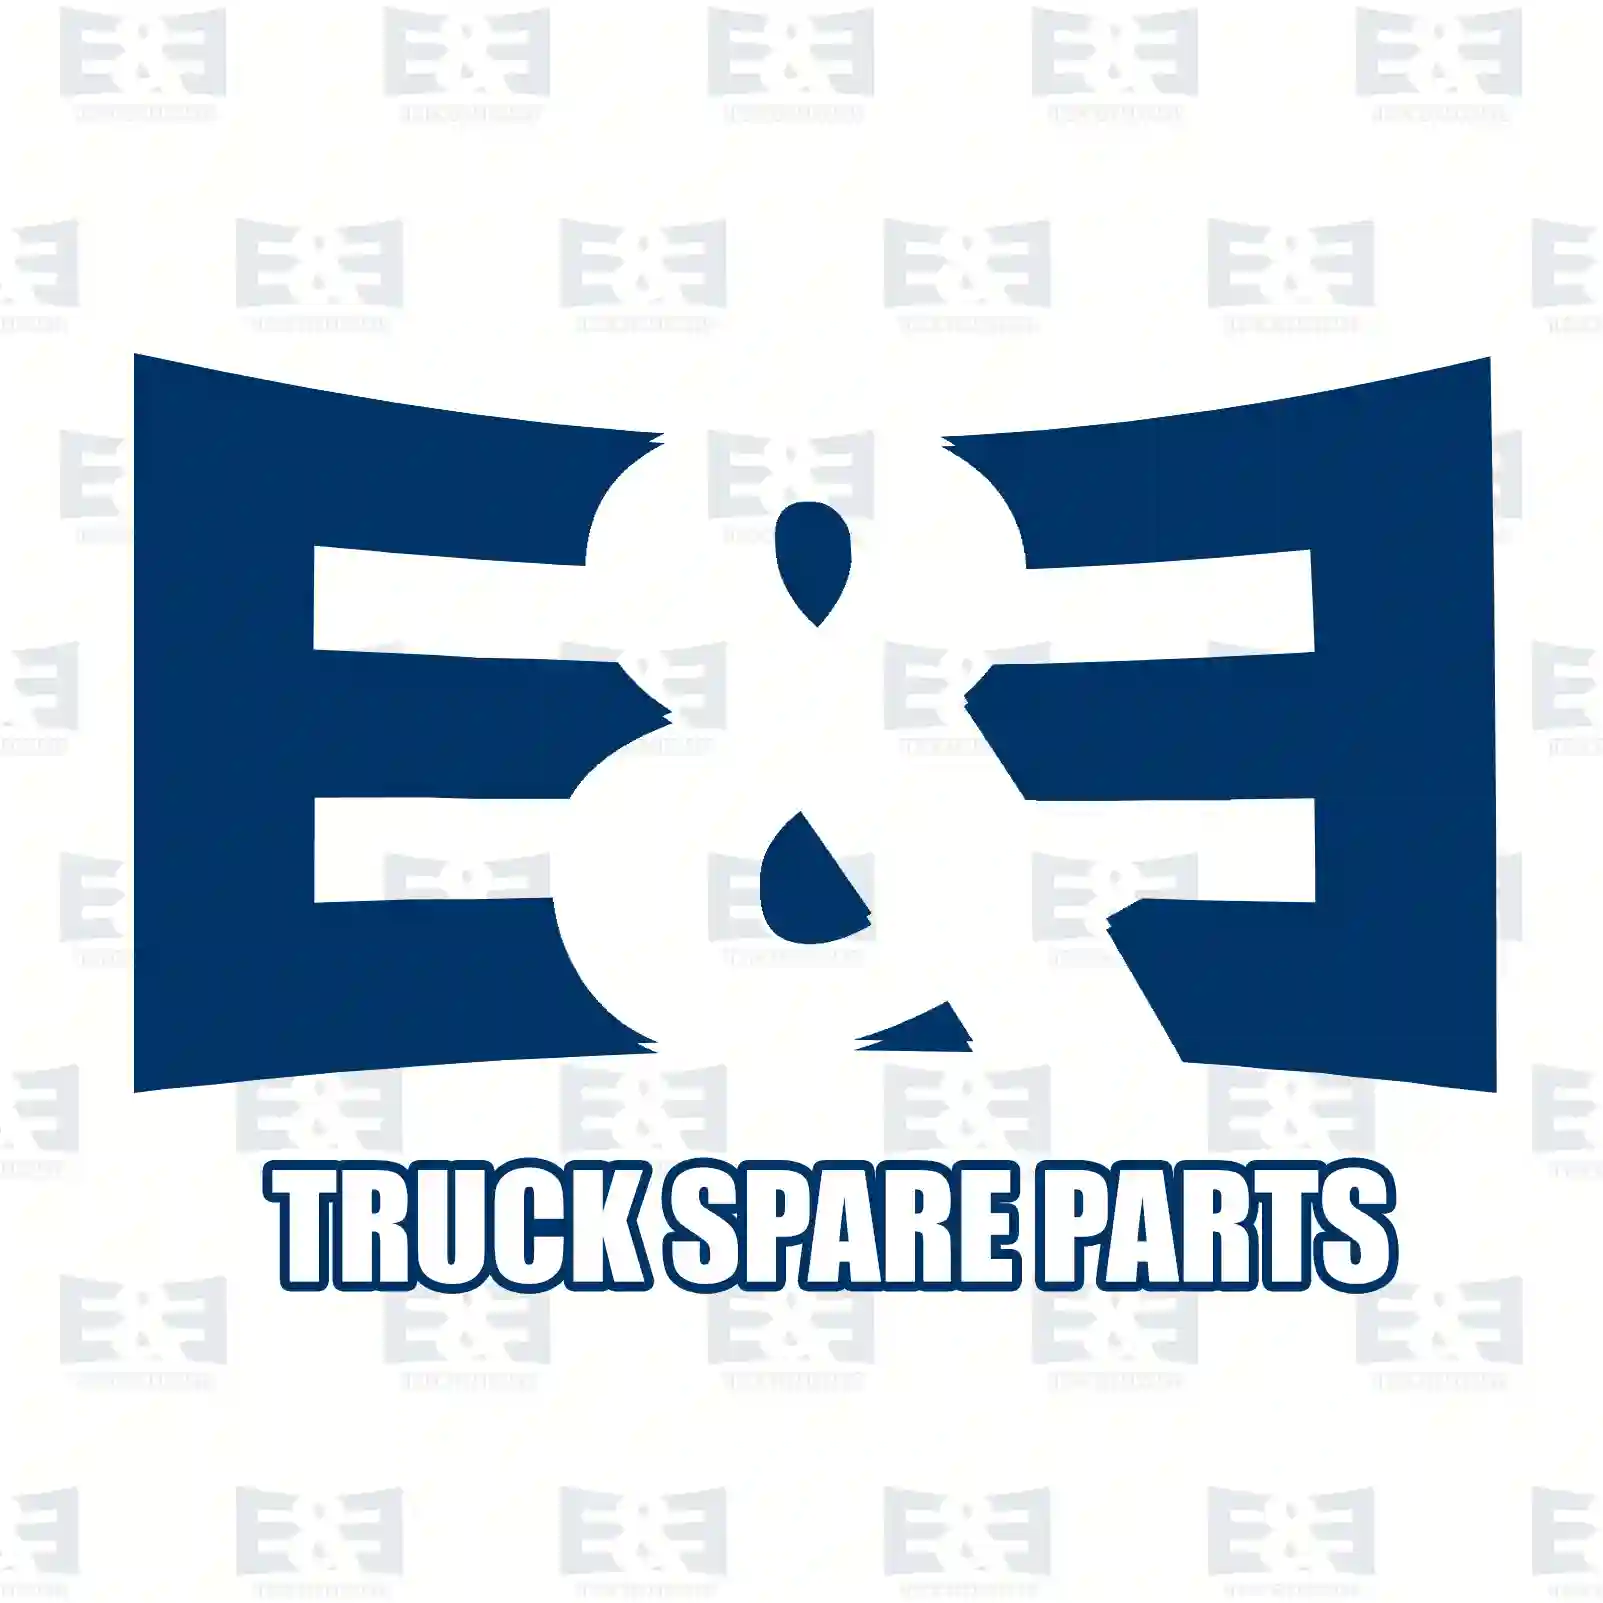 Spider pinion, 2E2270201, 81351080062, 81351080085, 3463531014 ||  2E2270201 E&E Truck Spare Parts | Truck Spare Parts, Auotomotive Spare Parts Spider pinion, 2E2270201, 81351080062, 81351080085, 3463531014 ||  2E2270201 E&E Truck Spare Parts | Truck Spare Parts, Auotomotive Spare Parts